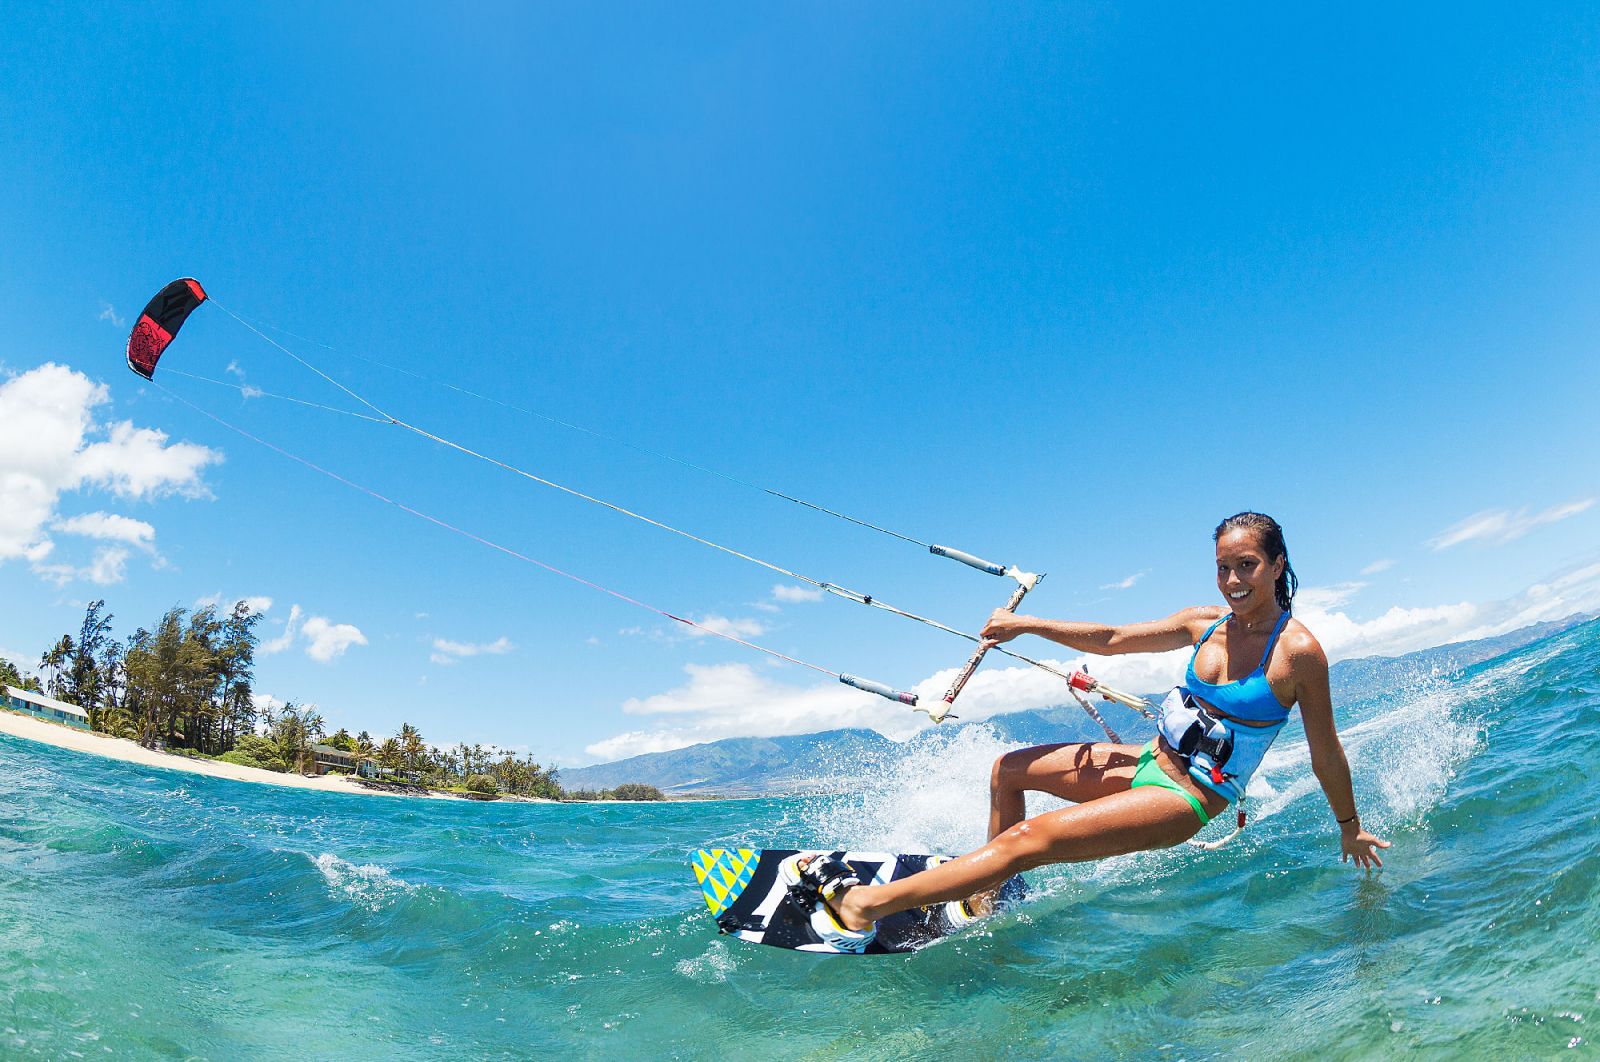 Mũi Né nổi tiếng với hoạt động tắm biển, lướt ván